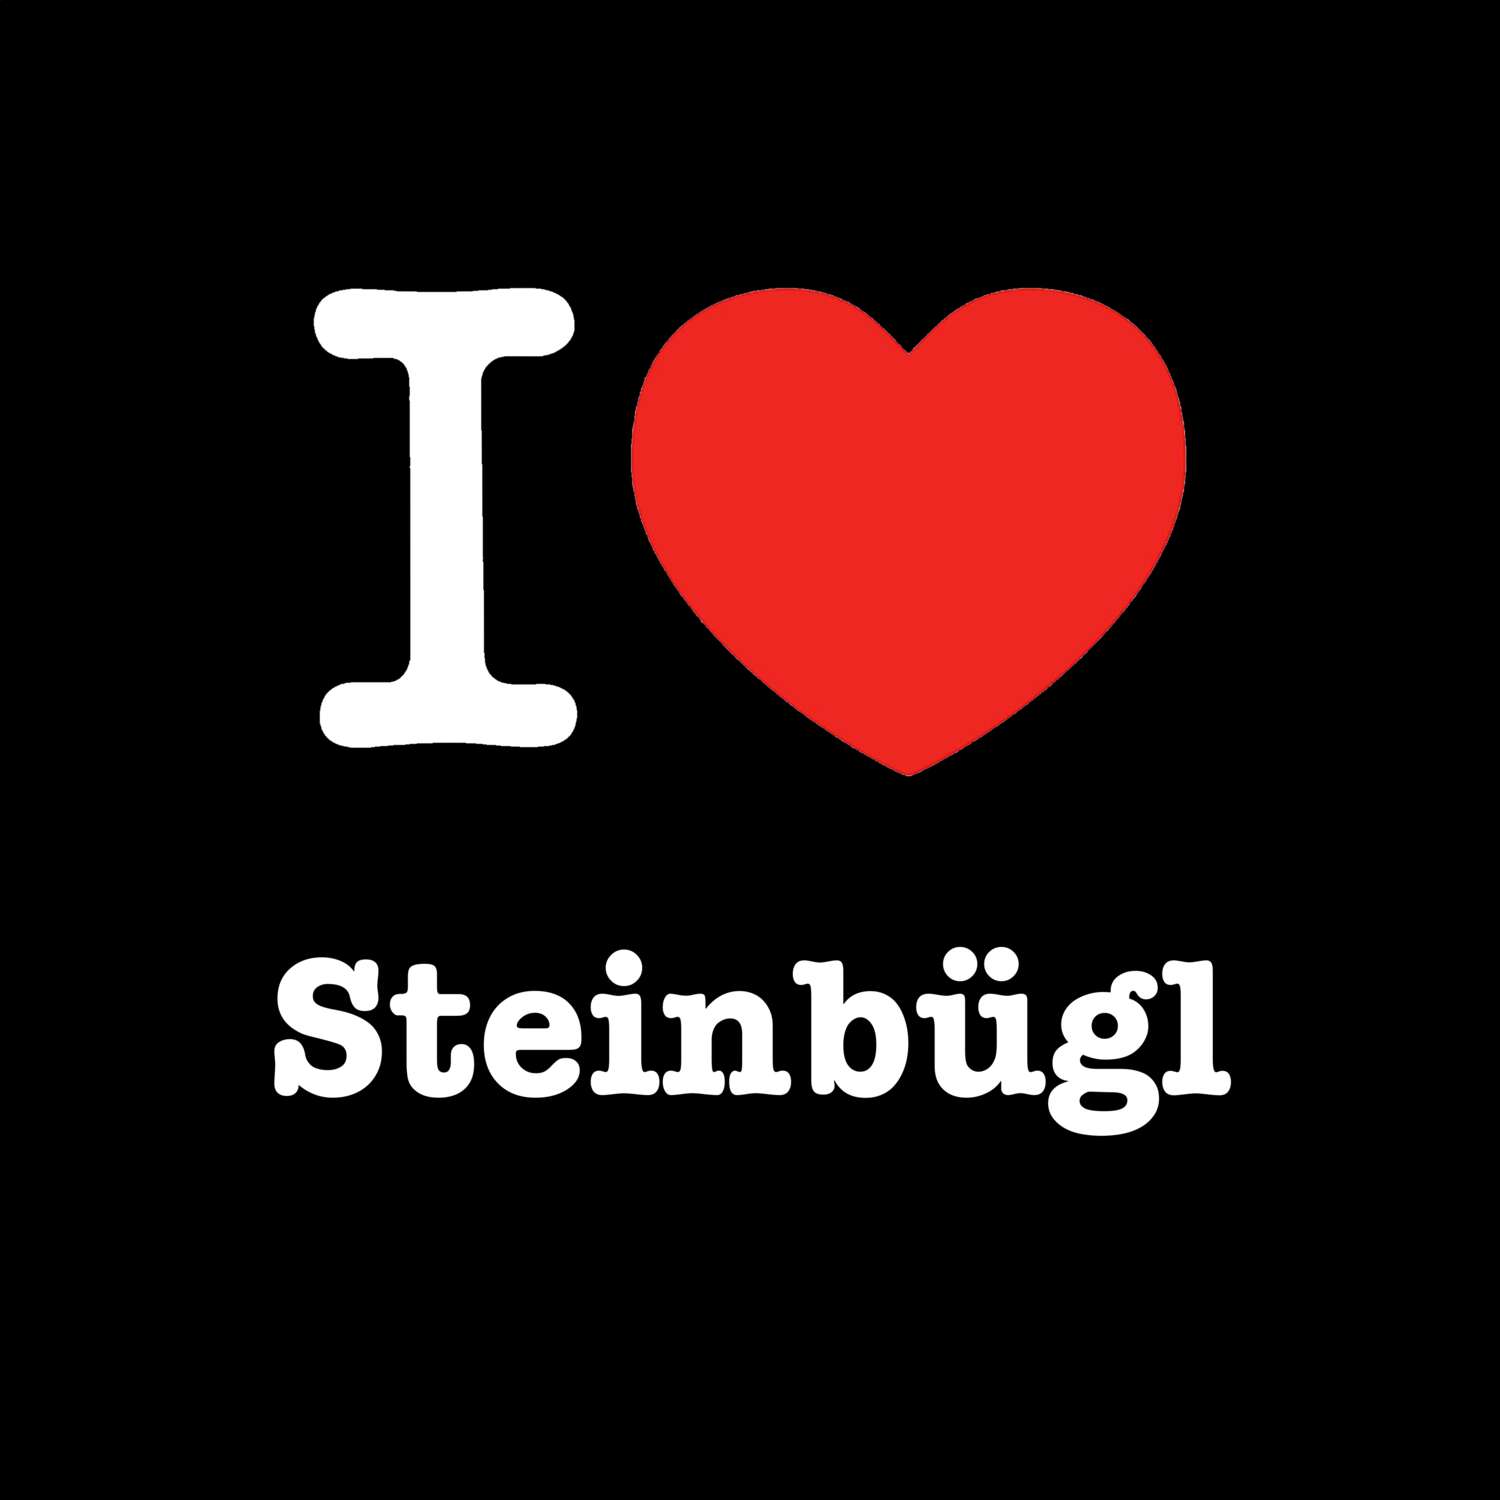 Steinbügl T-Shirt »I love«